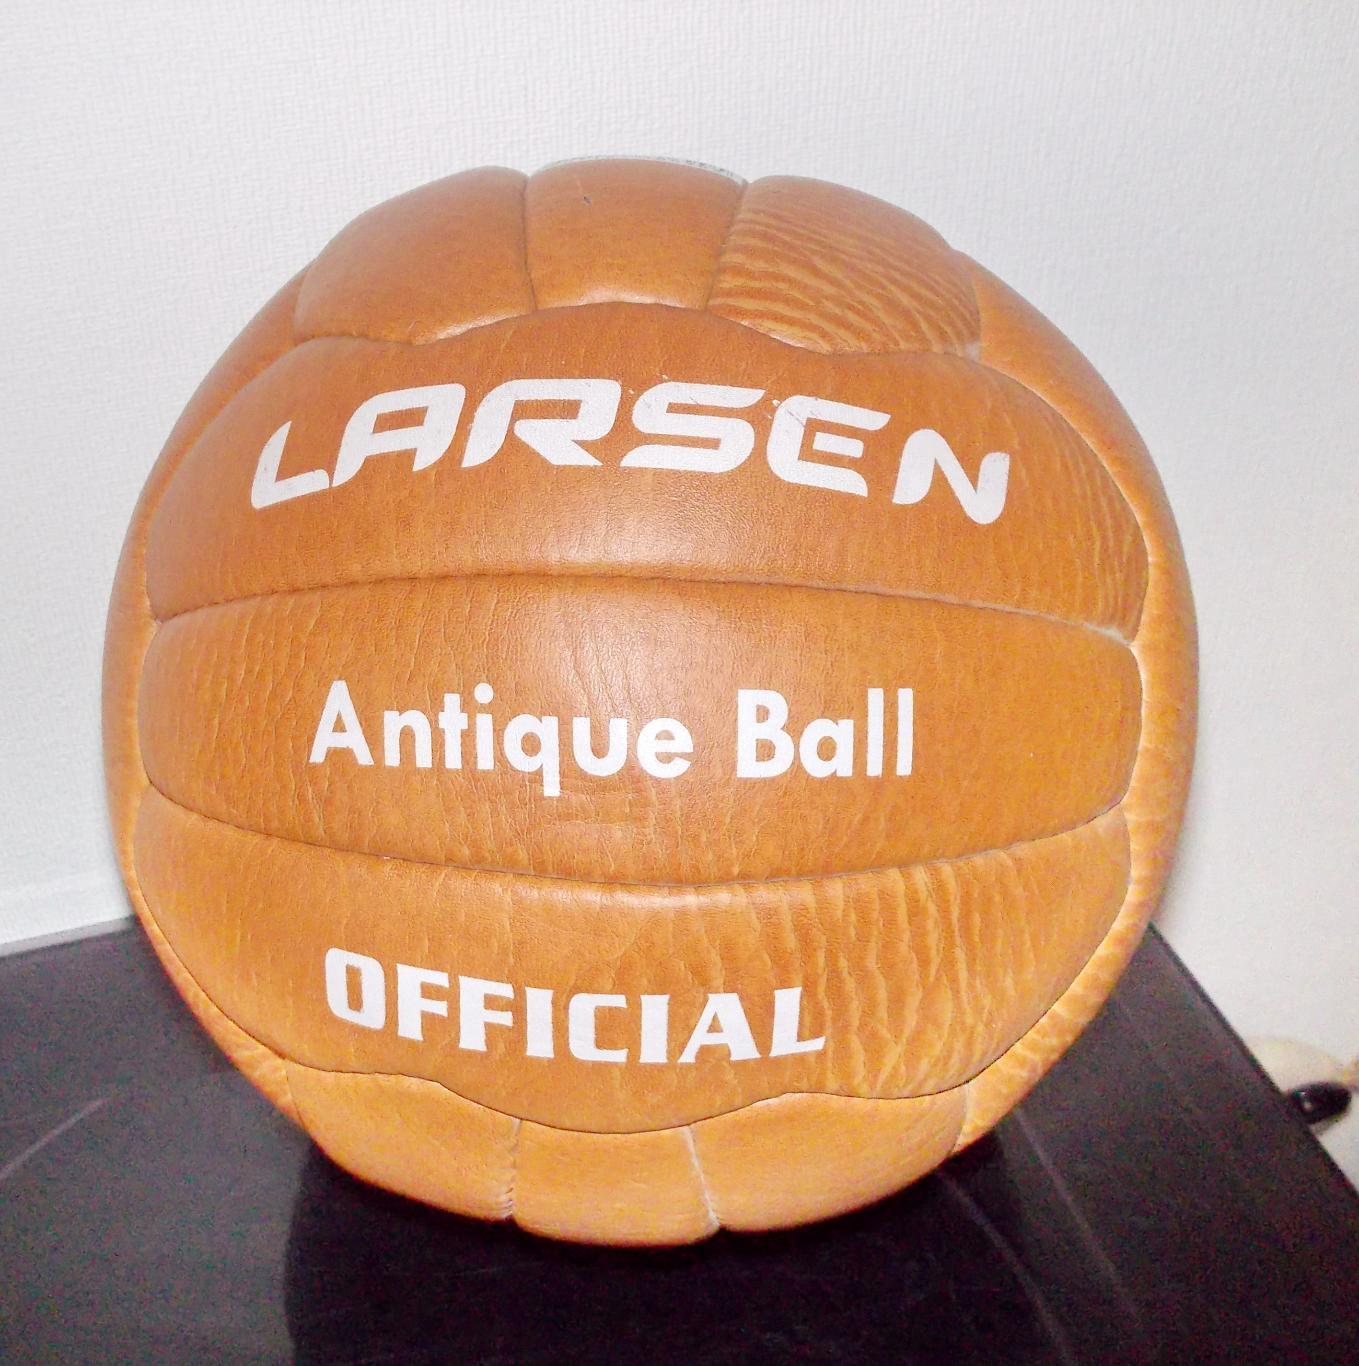 Футбольный раритетный мяч. Made in Pakistan.